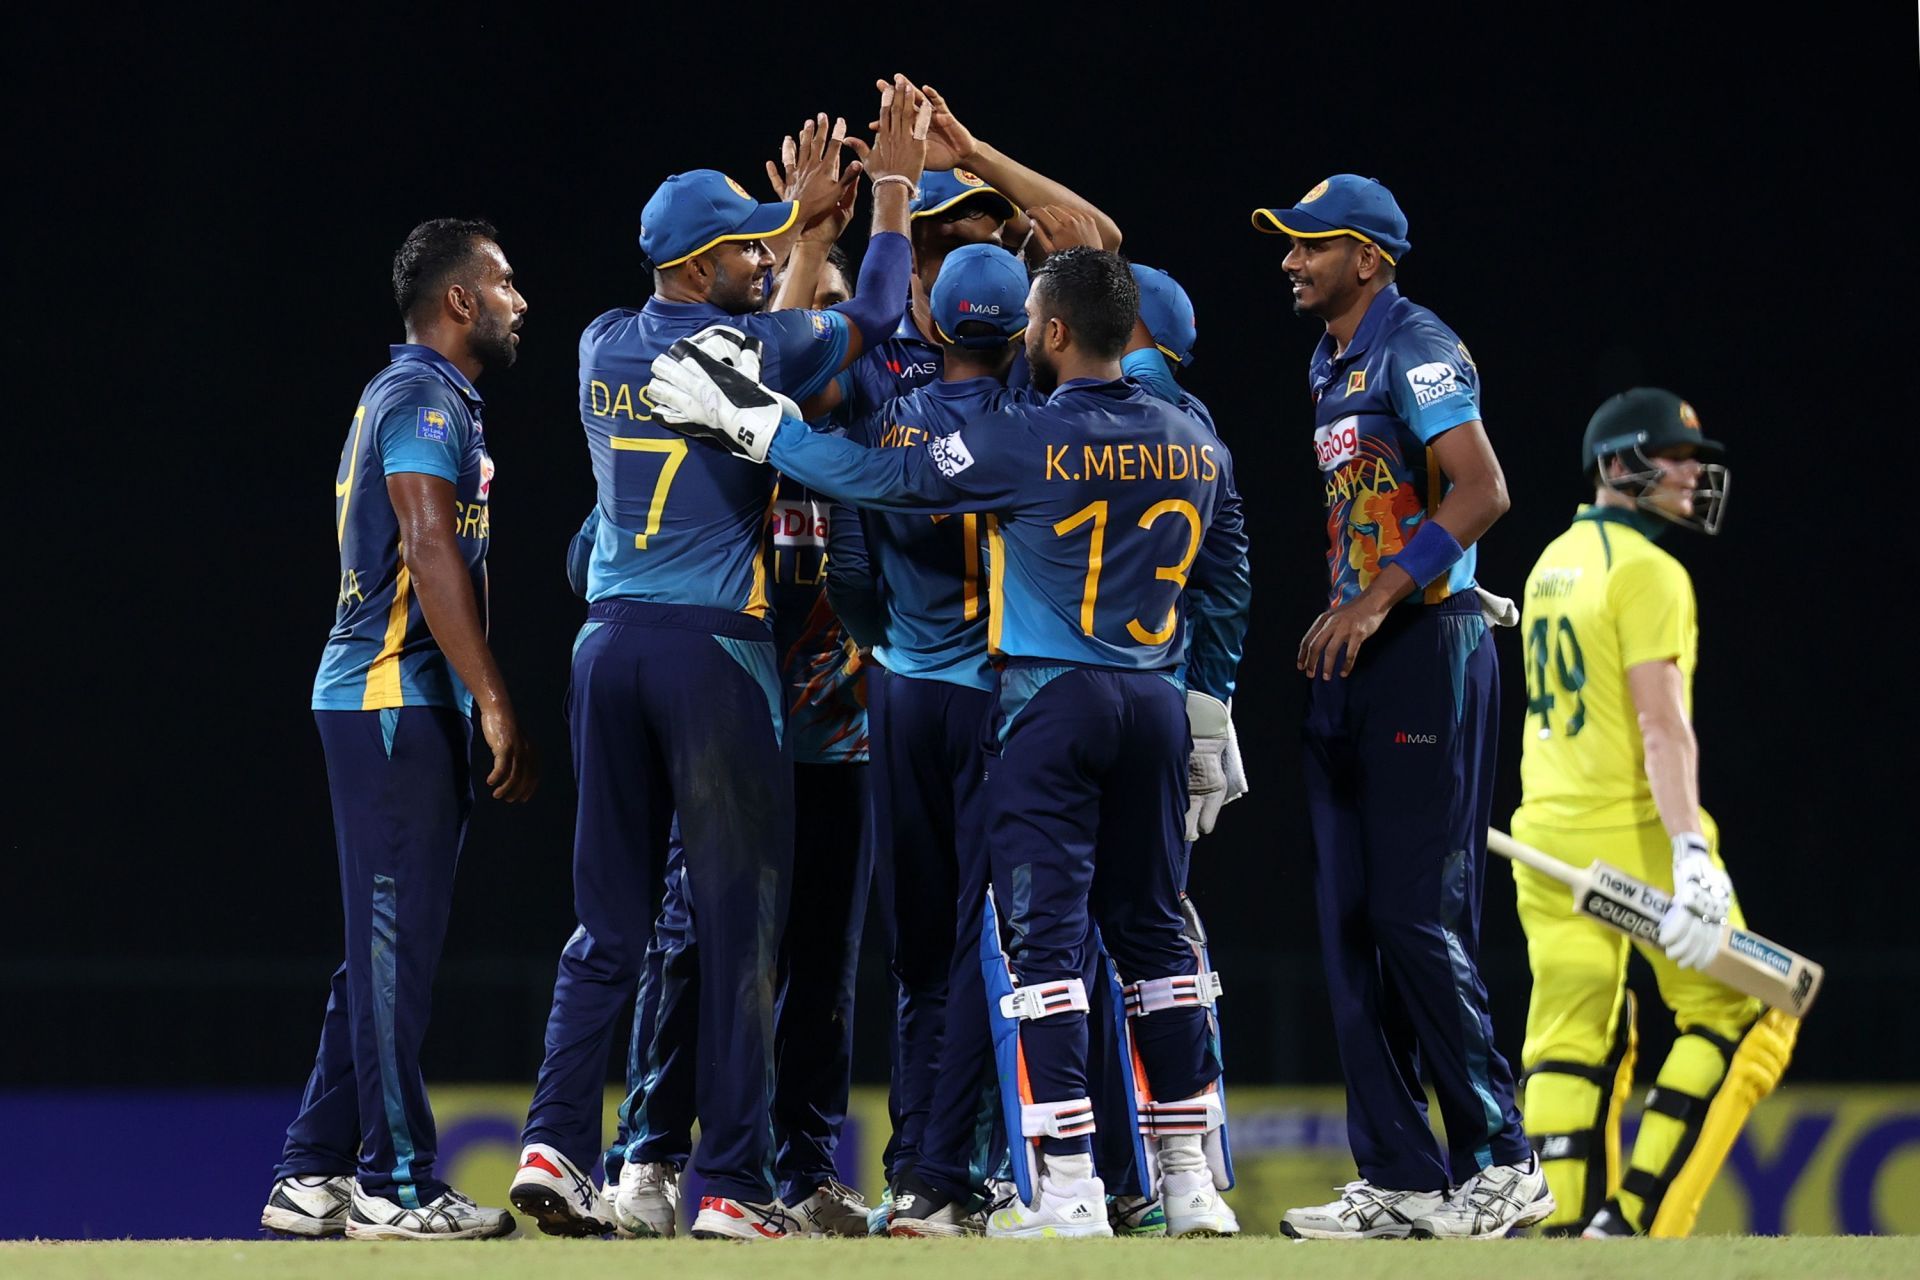 Sri Lanka v Australia - 2nd ODI